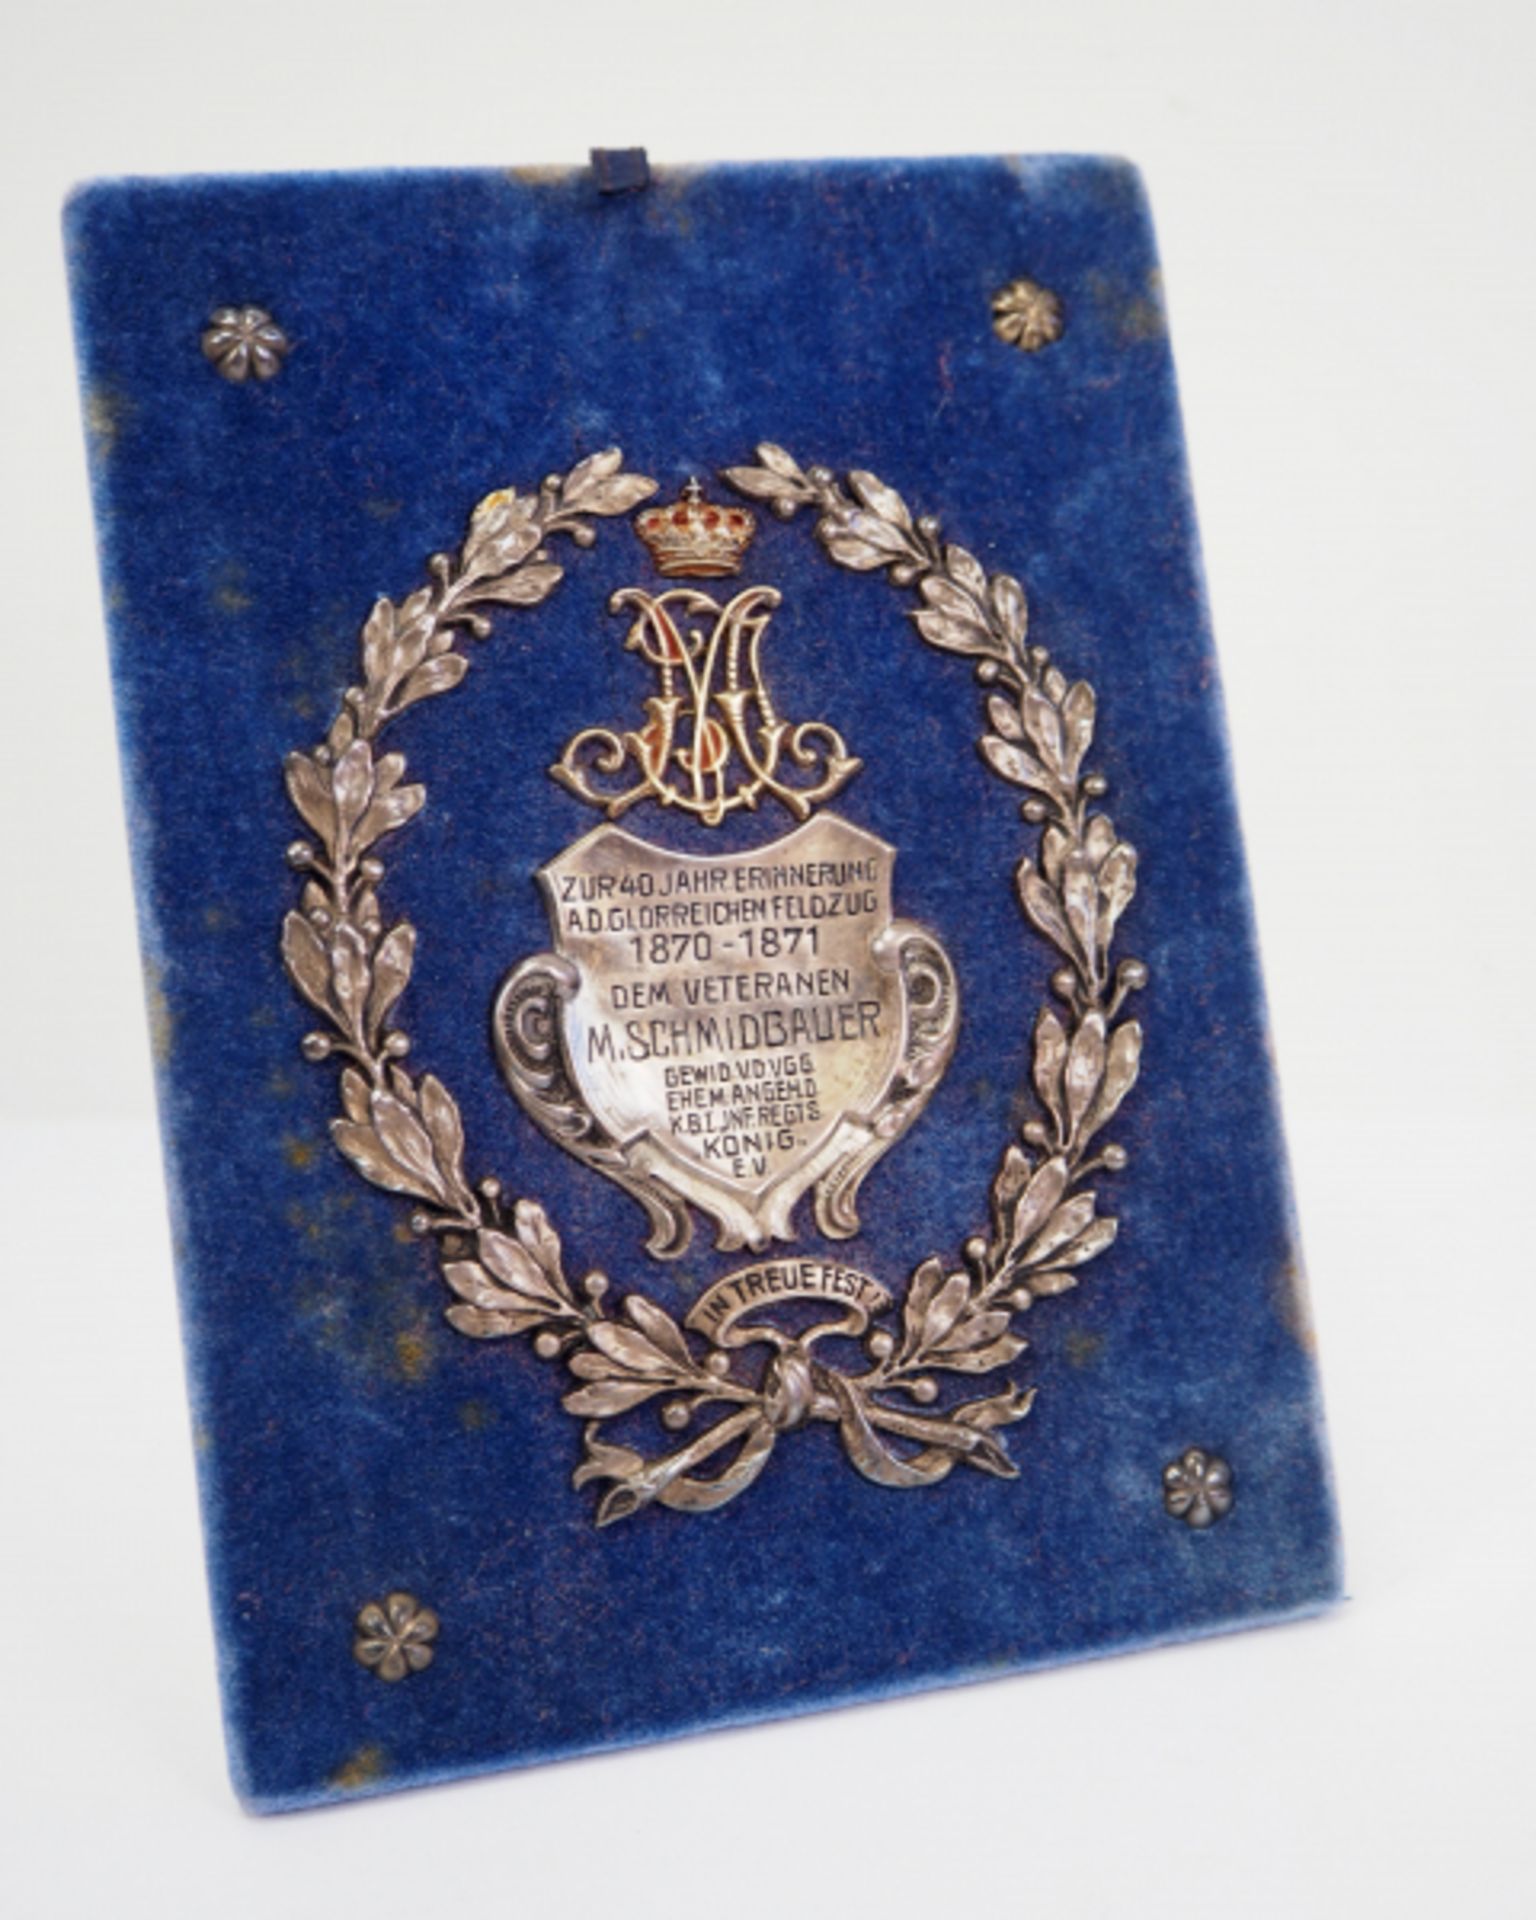 Bayern: Infanterie Regiment "König" - Veteranen-Auszeichnung 1870-71.Samt bezogener Aufsteller, - Bild 2 aus 3